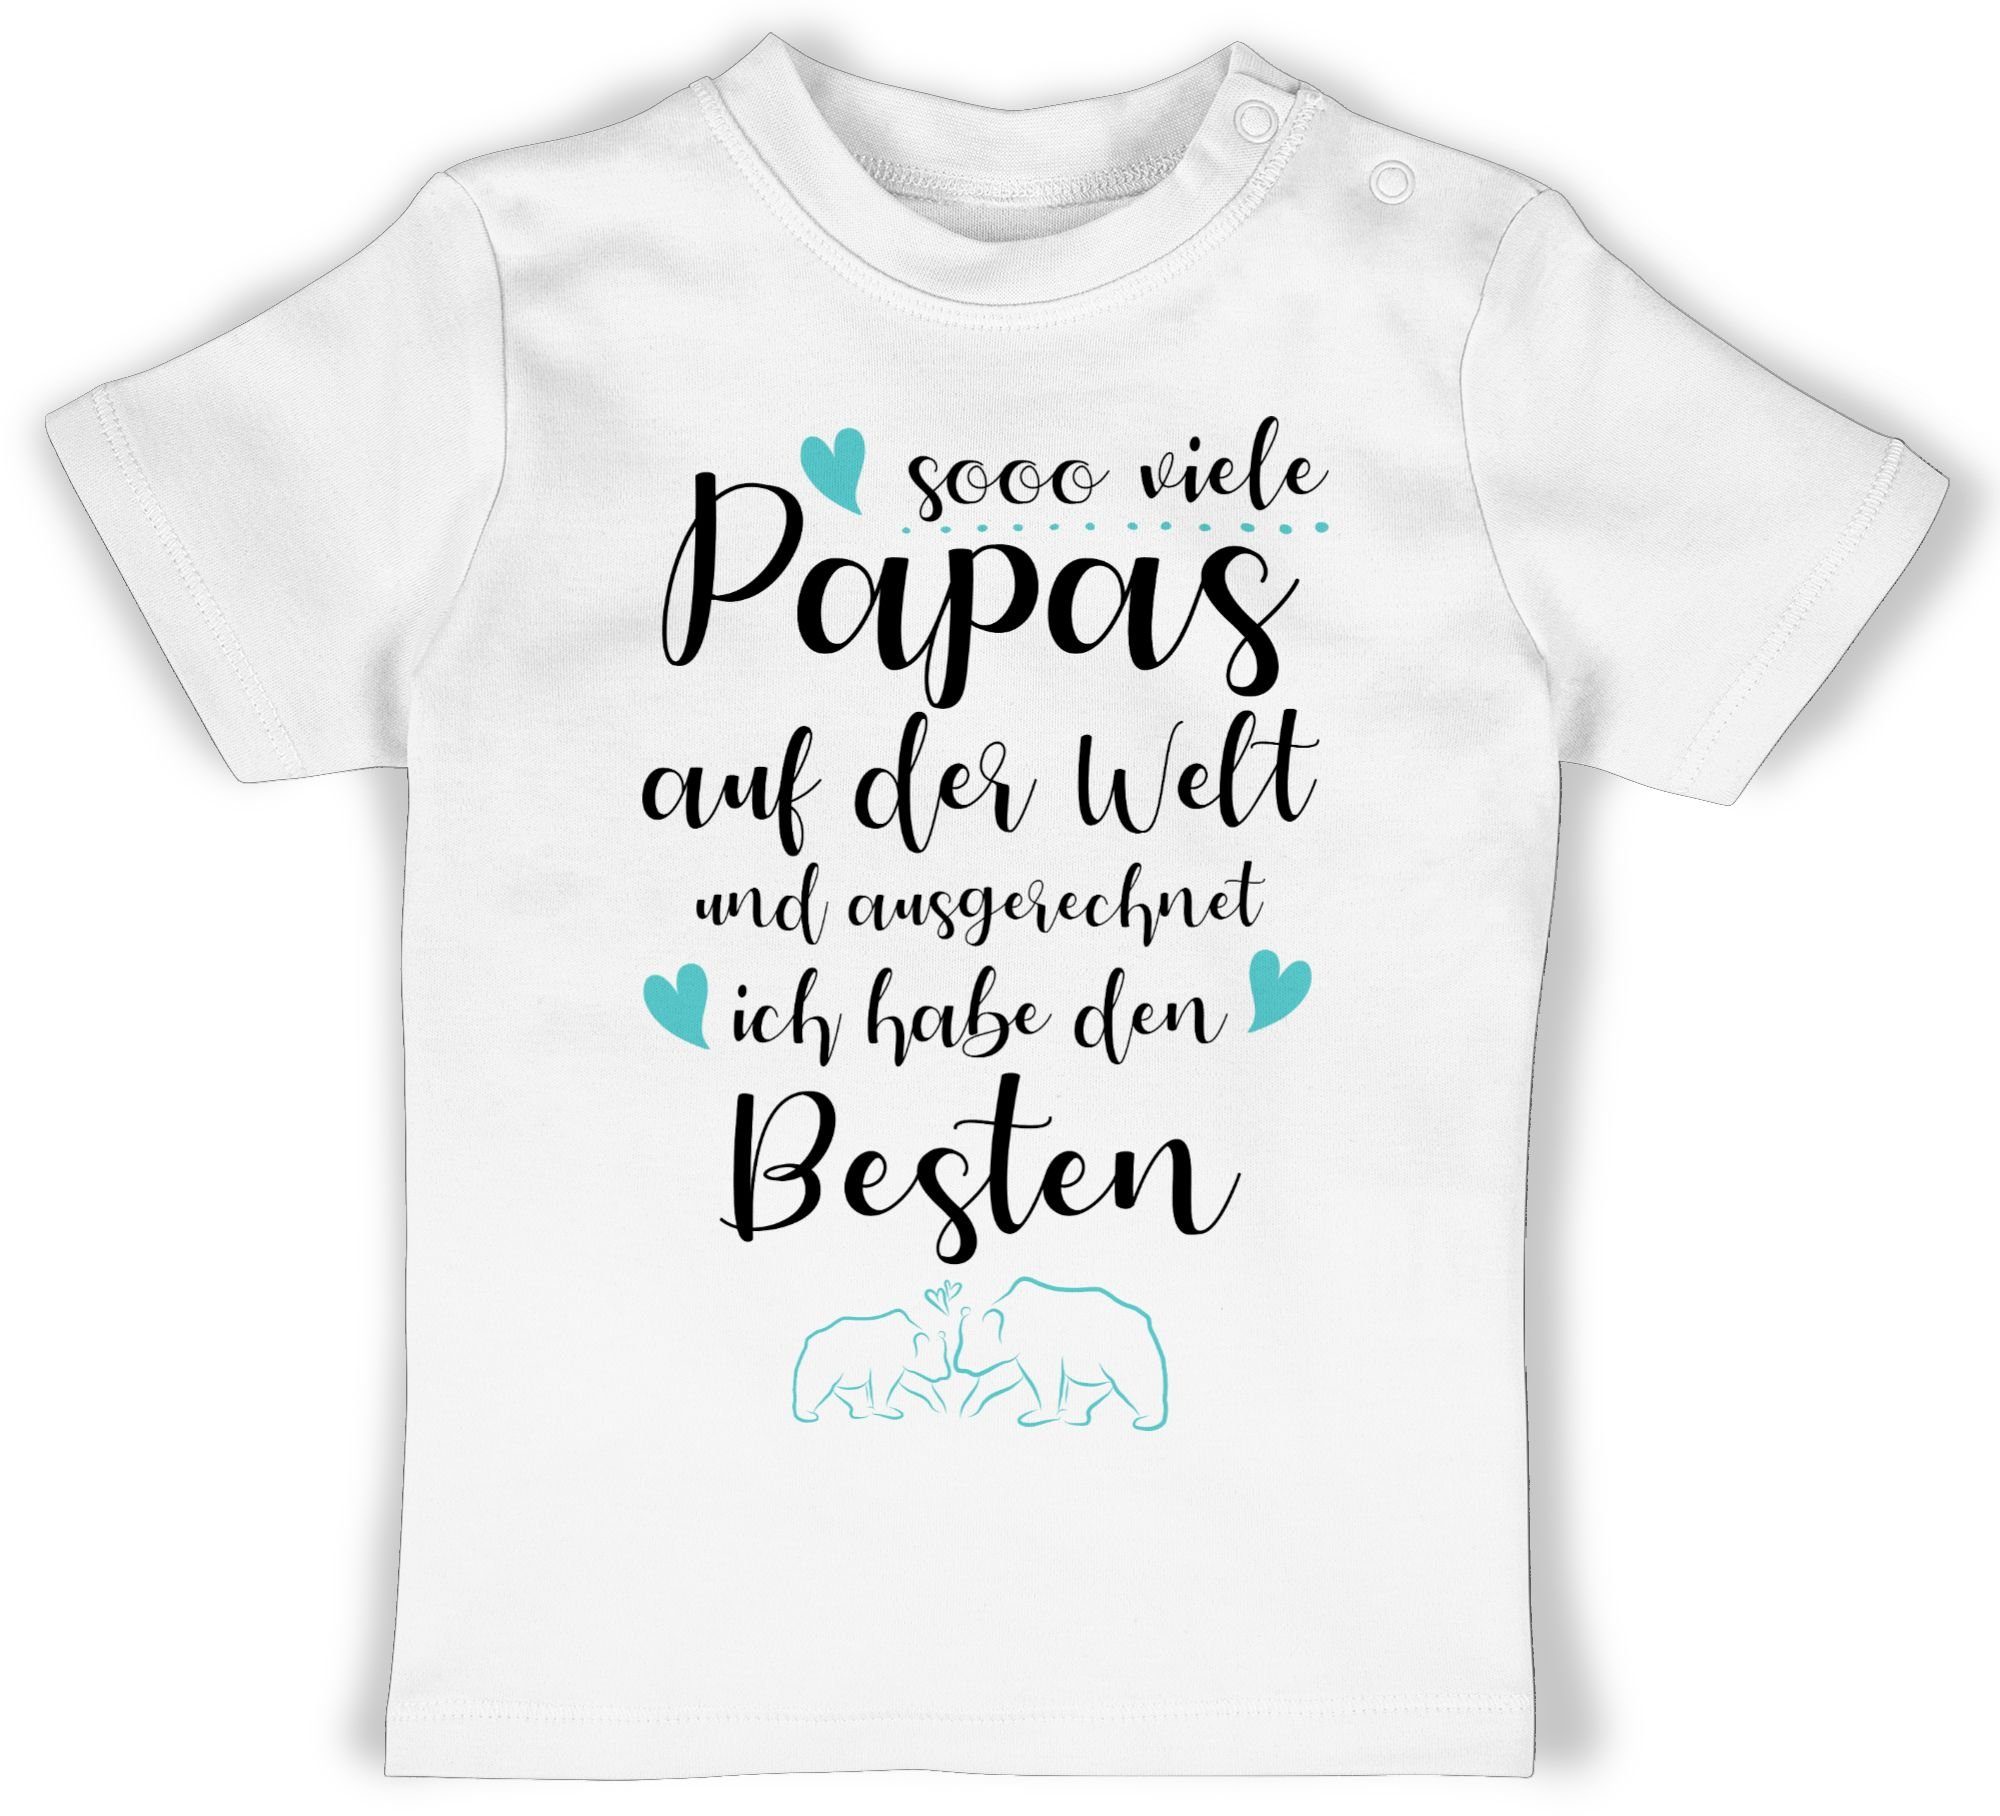 Shirtracer T-Shirt Sooo viele Papas auf der Welt und ausgerechnet ich habe den Besten Geschenk Vatertag Baby 1 Weiß